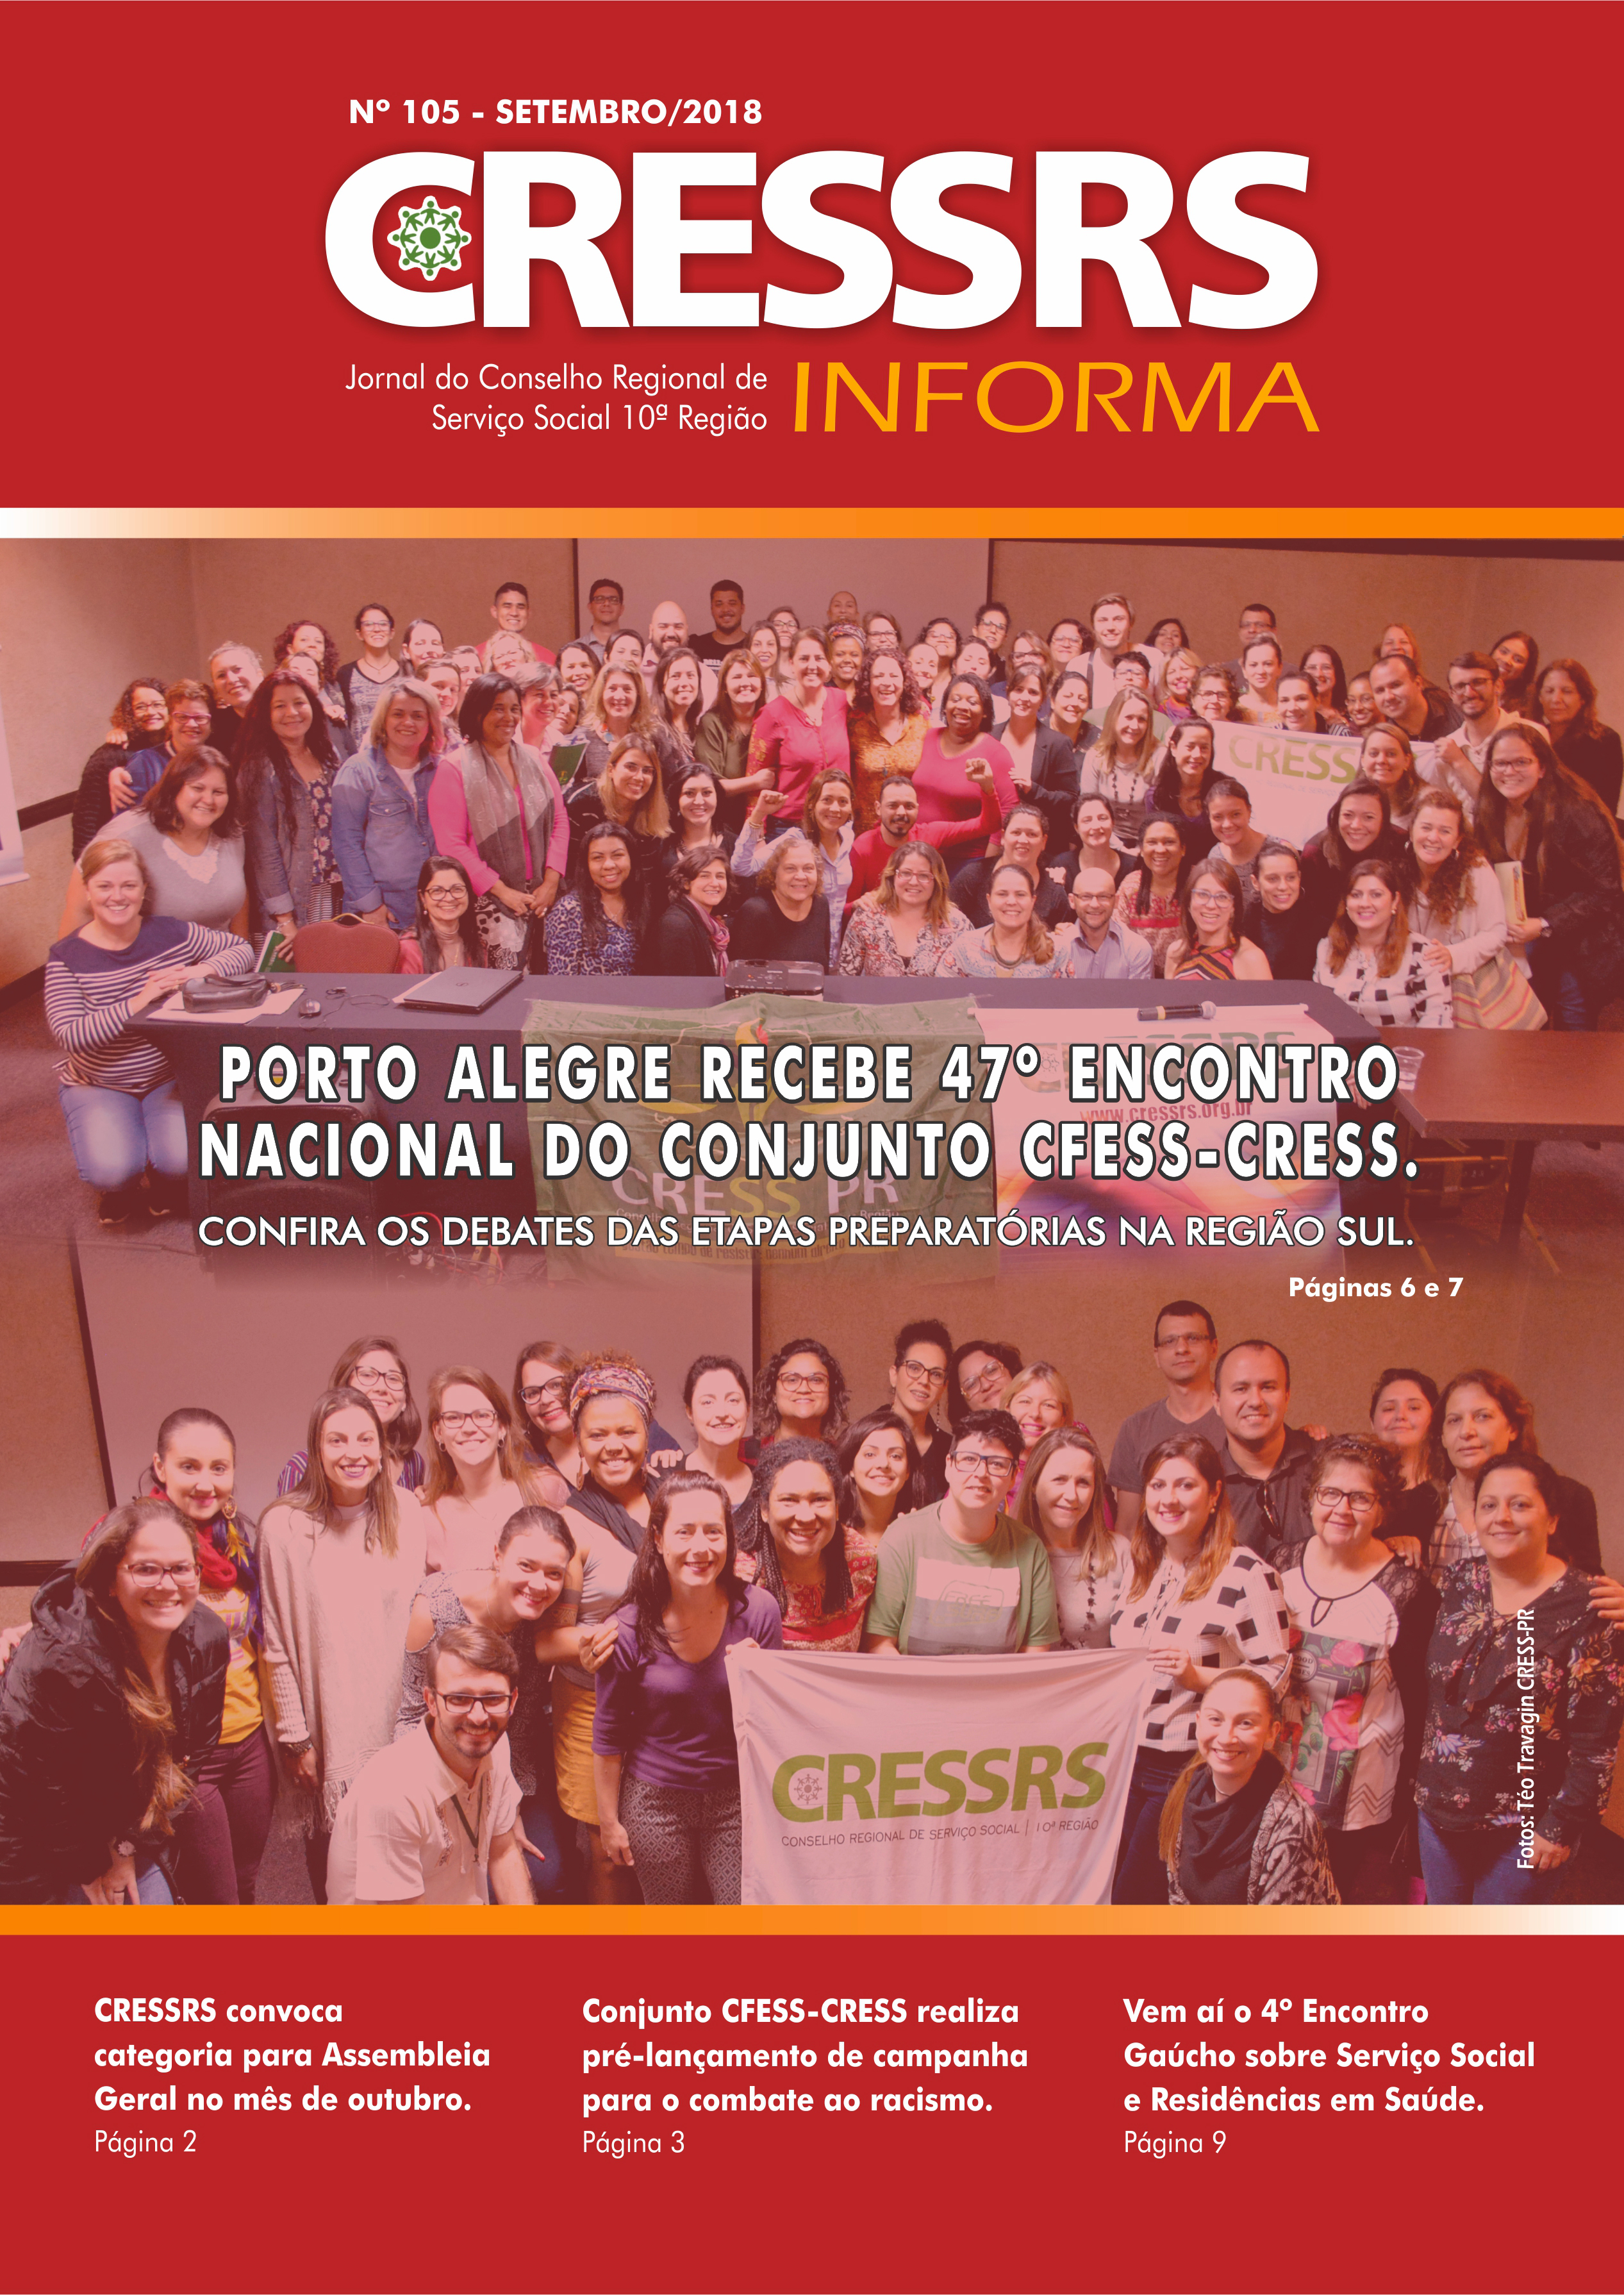 Arquivos Publicações - CRESS-PR